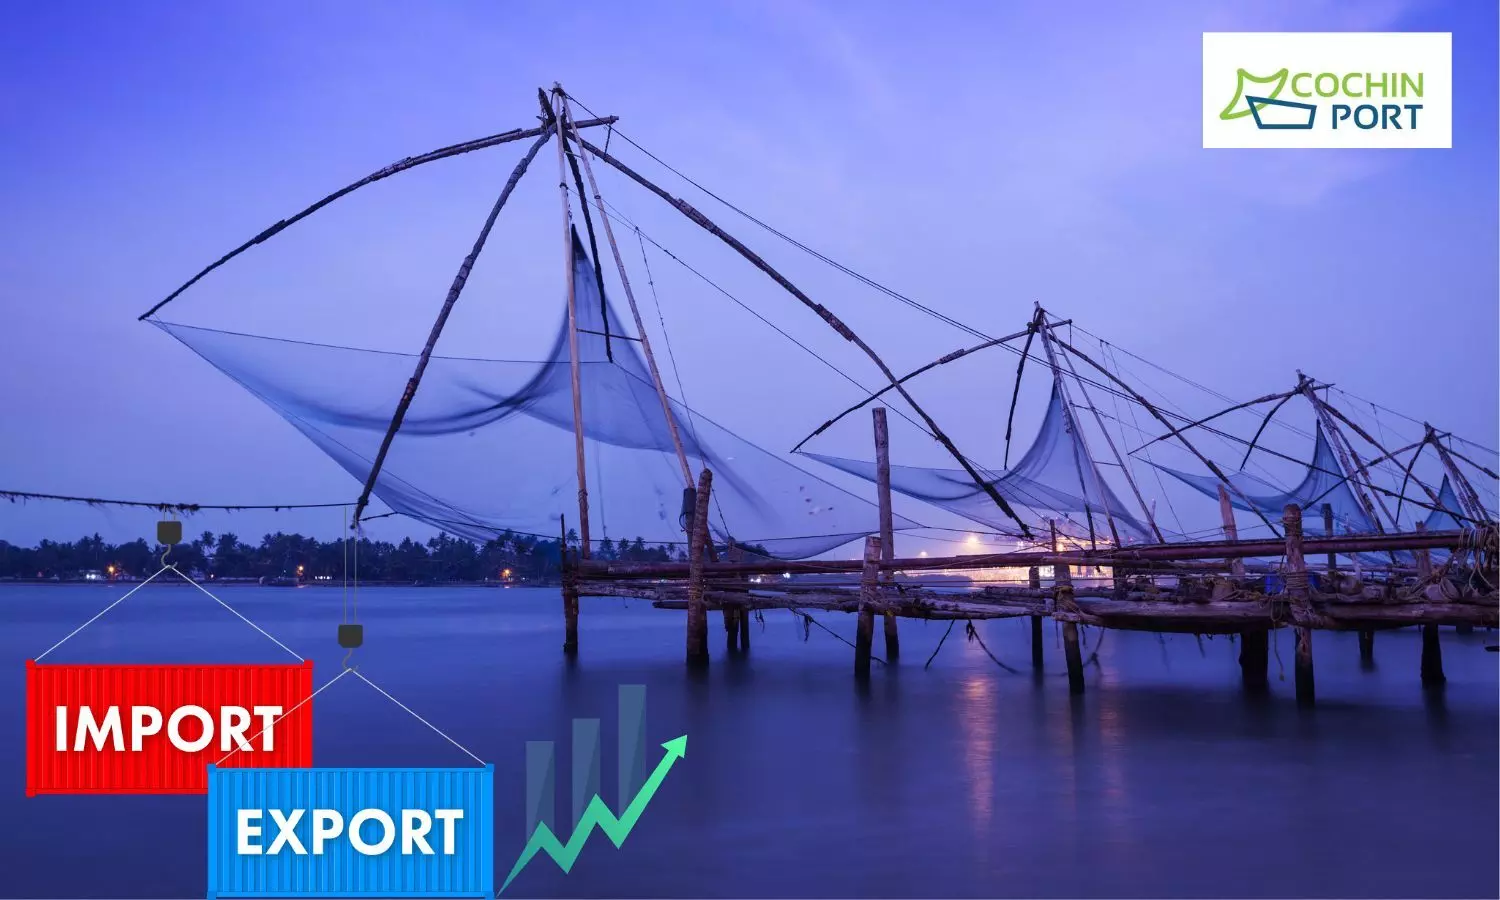 Chinese Fishing Net, Export, Cochin Port logo